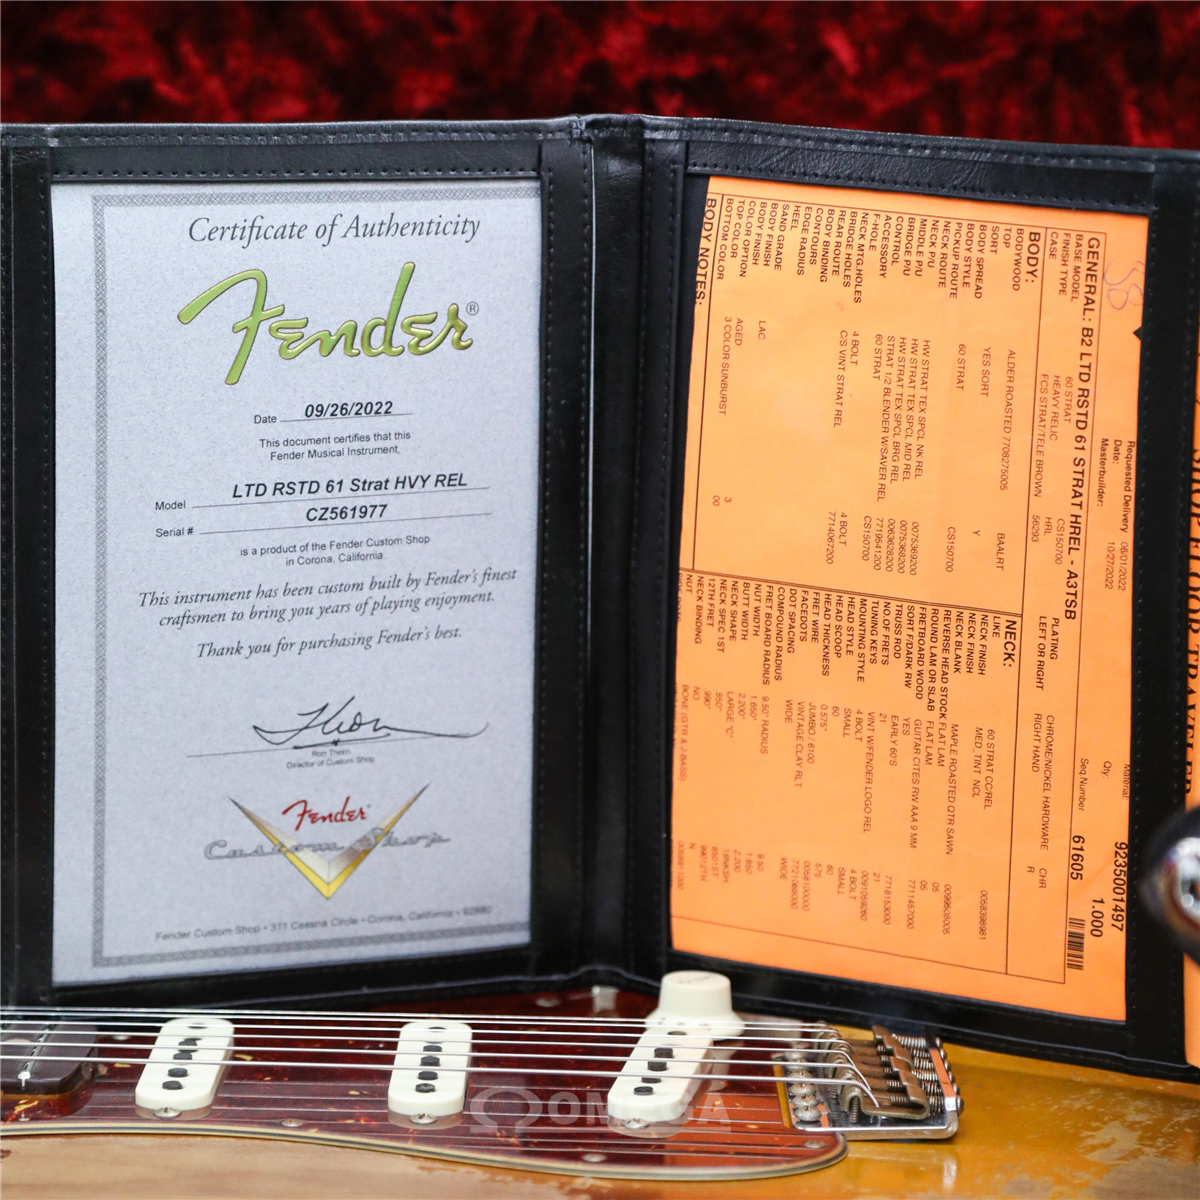 Manche Stratocaster Fender USA verni touche Palissandre radius 9,5 22  frettes